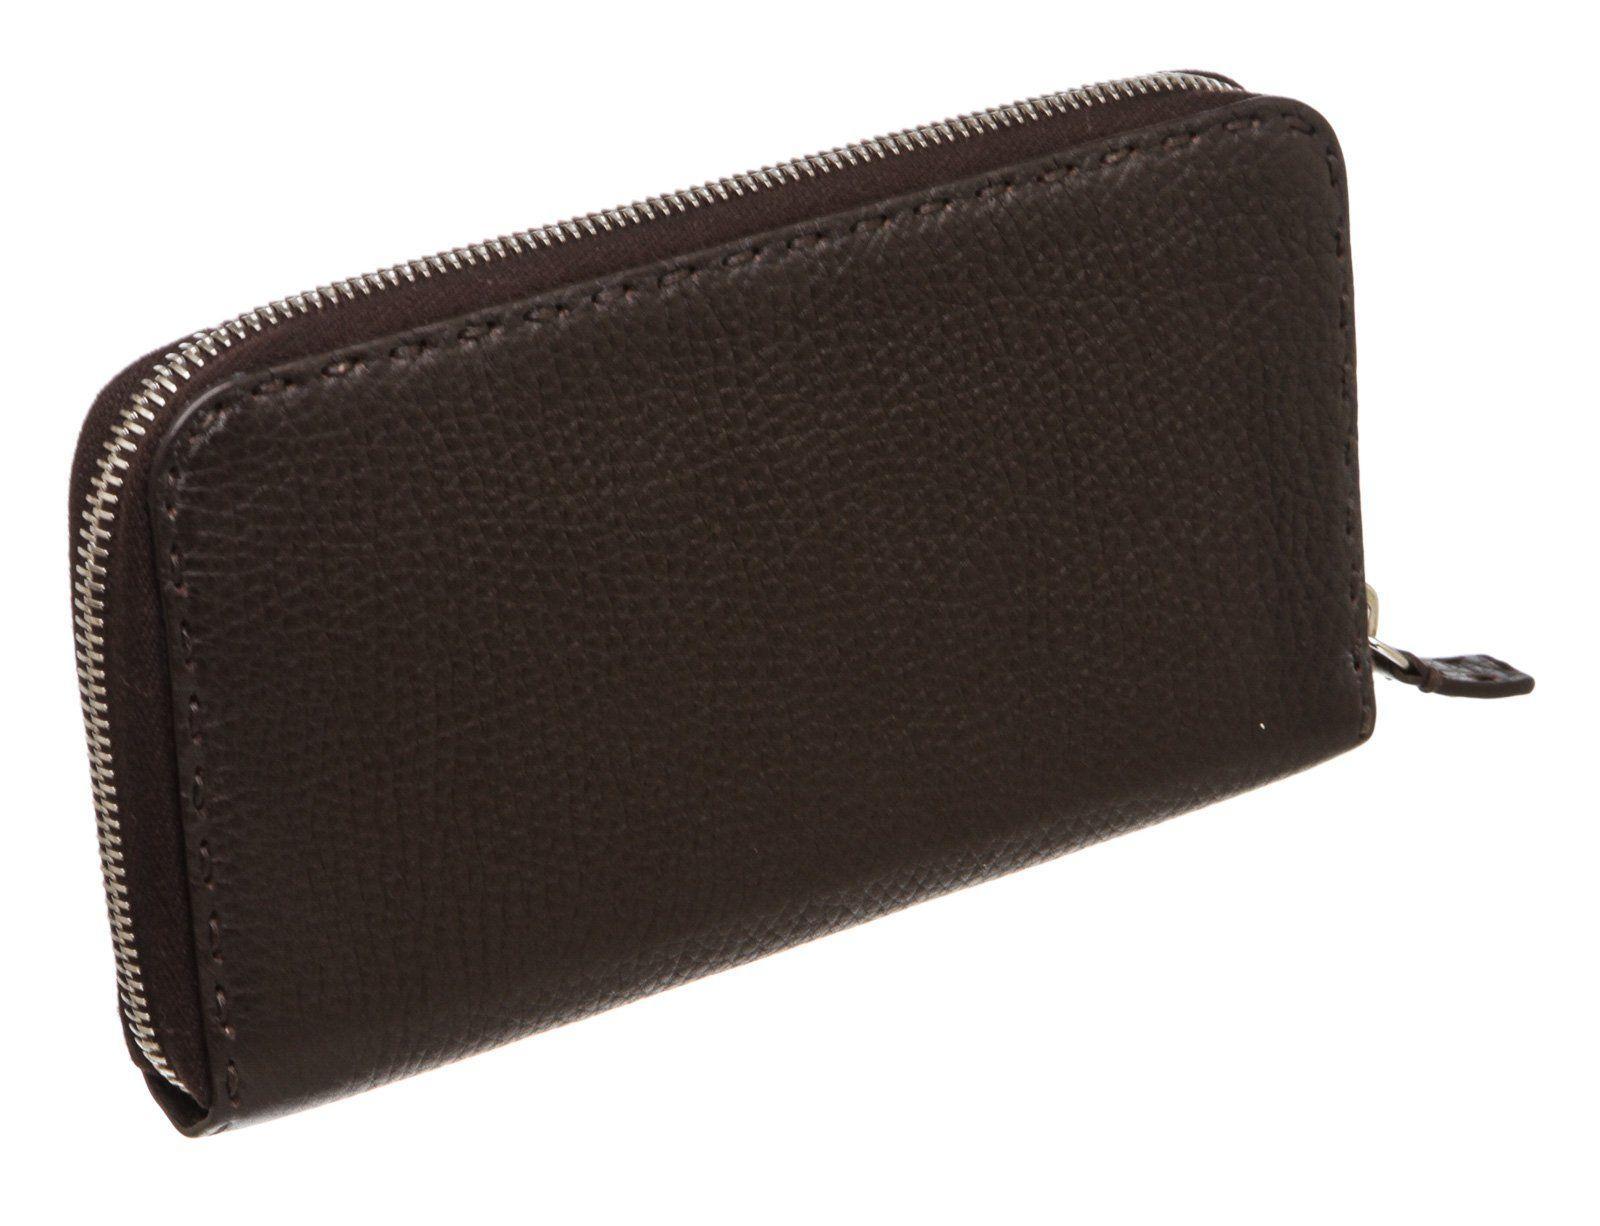 Black Fendi Salleria dark brown leather zip around wallet with silver-tone hardware For Sale